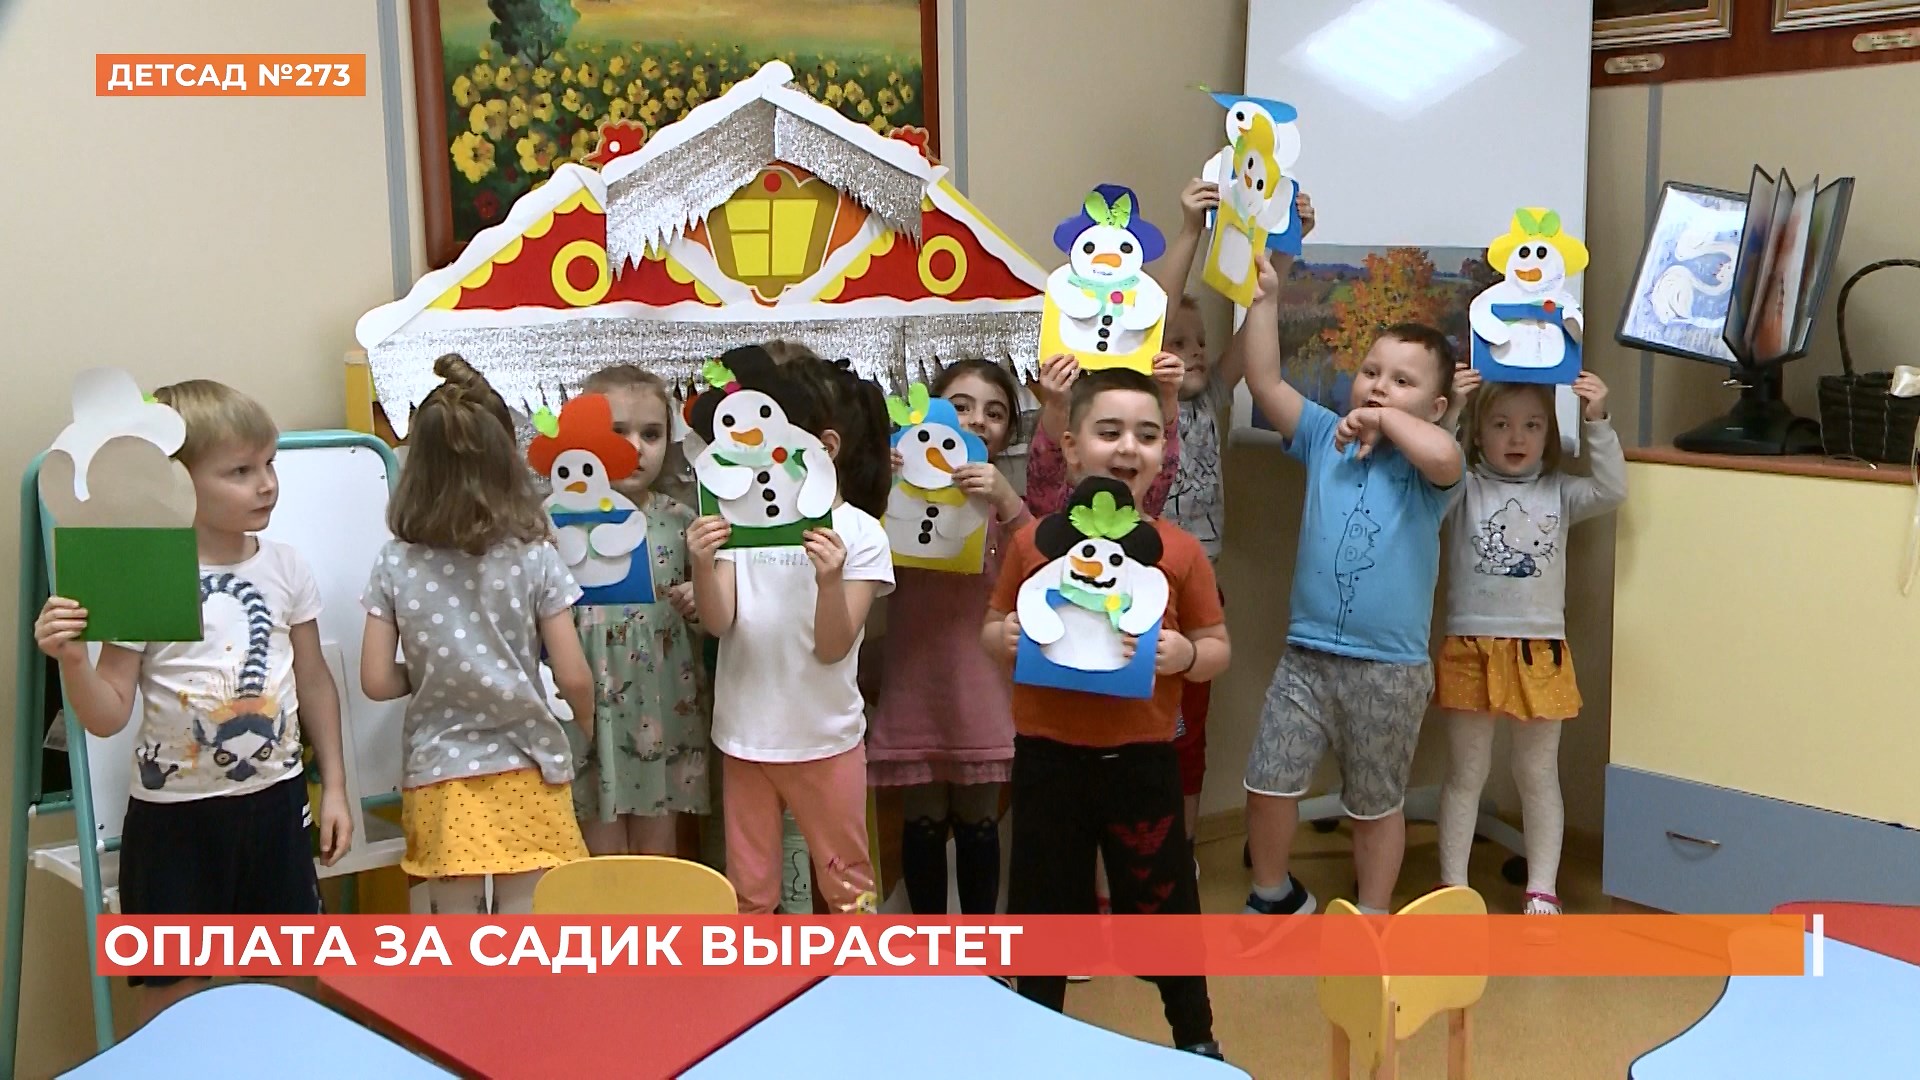 Плата за детсад в Ростове вырастет с февраля